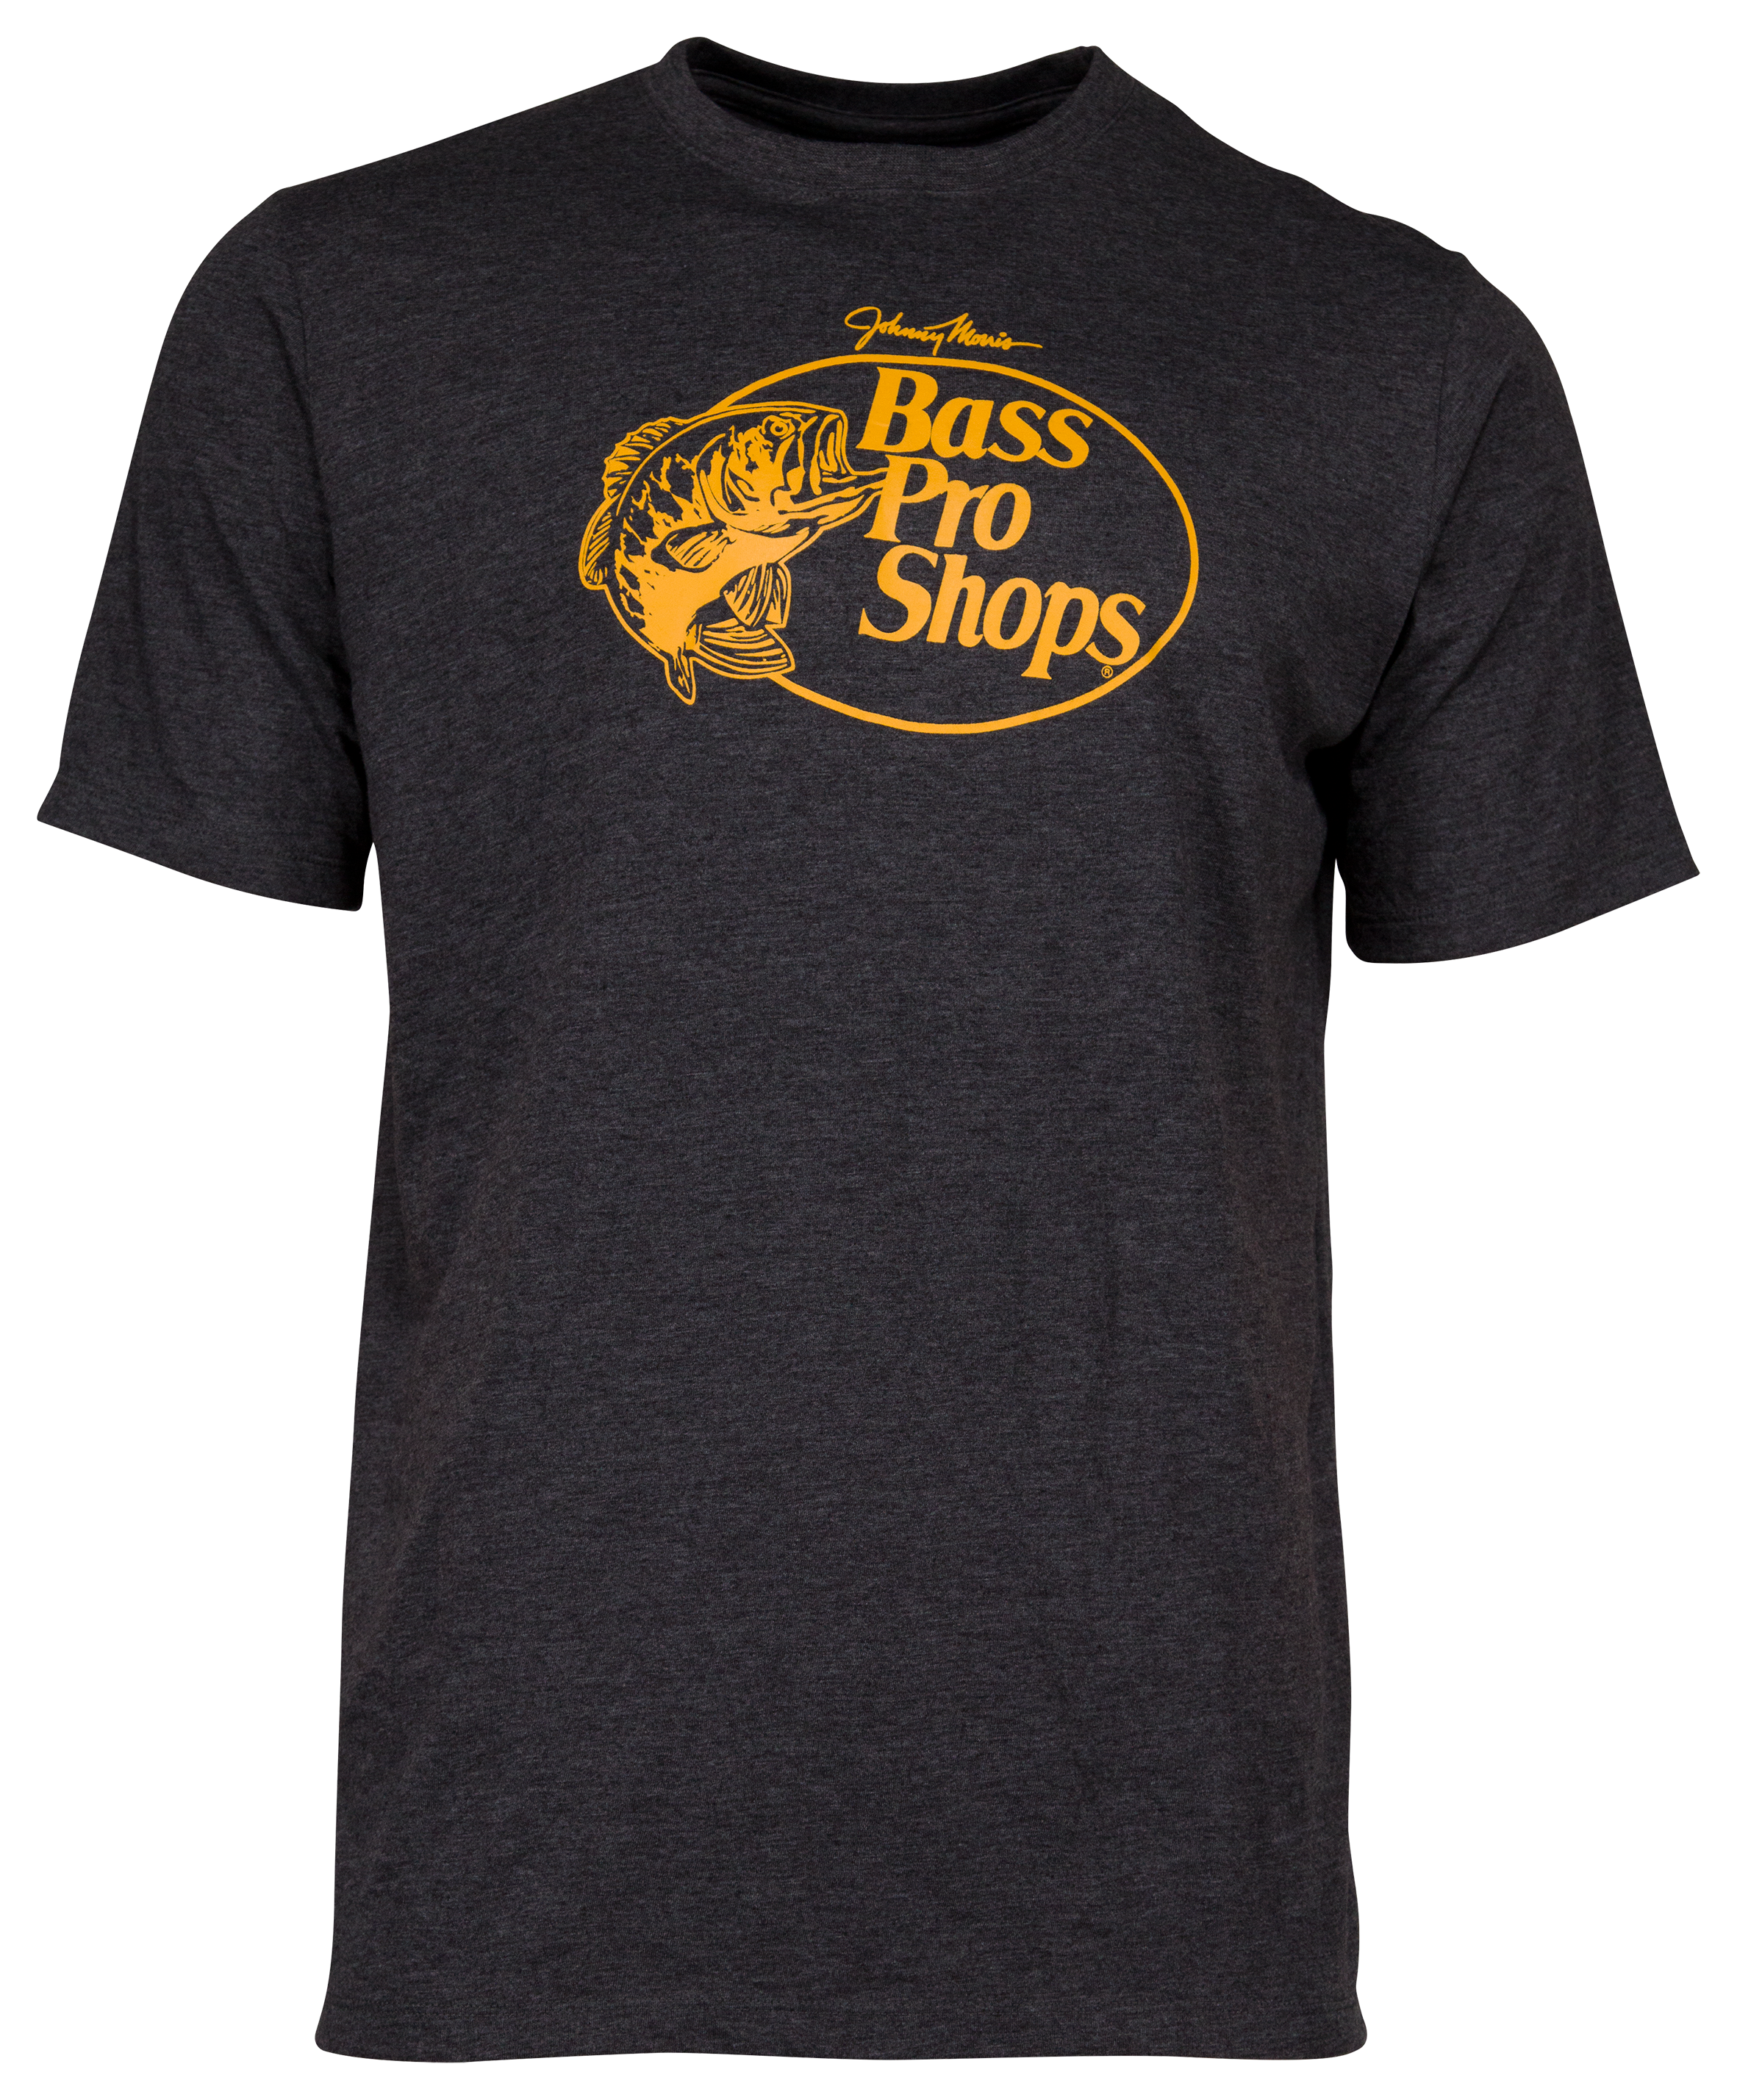 Bass Pro Shops Tri-Blend Logo Short-Sleeve T-Shirt for Men - Heather Gray - 3XL